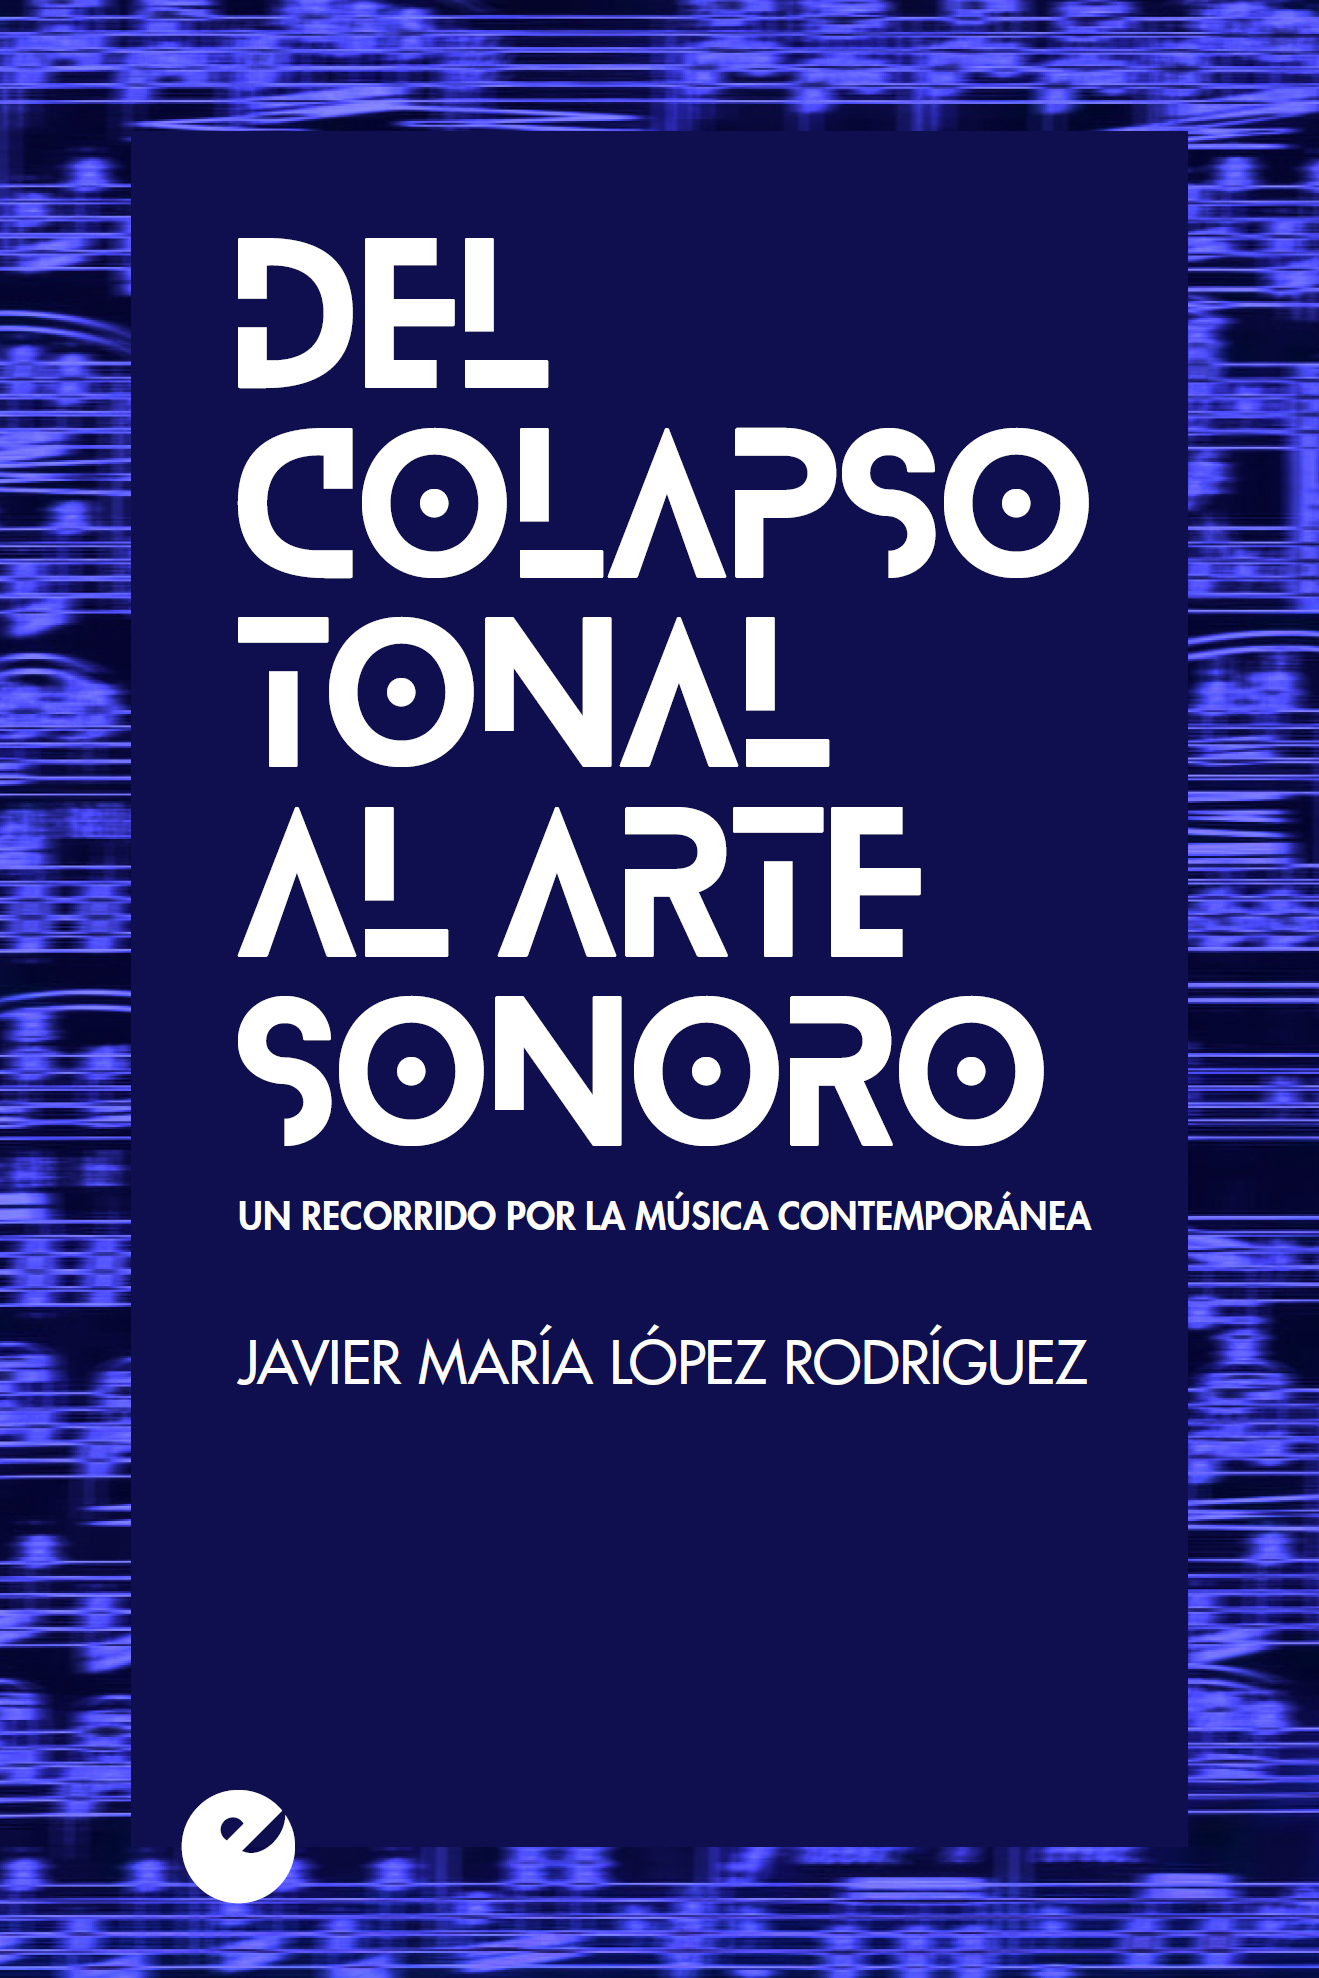 DEL COLAPSO TONAL AL ARTE SONORO «Un recorrido por la música contemporánea»